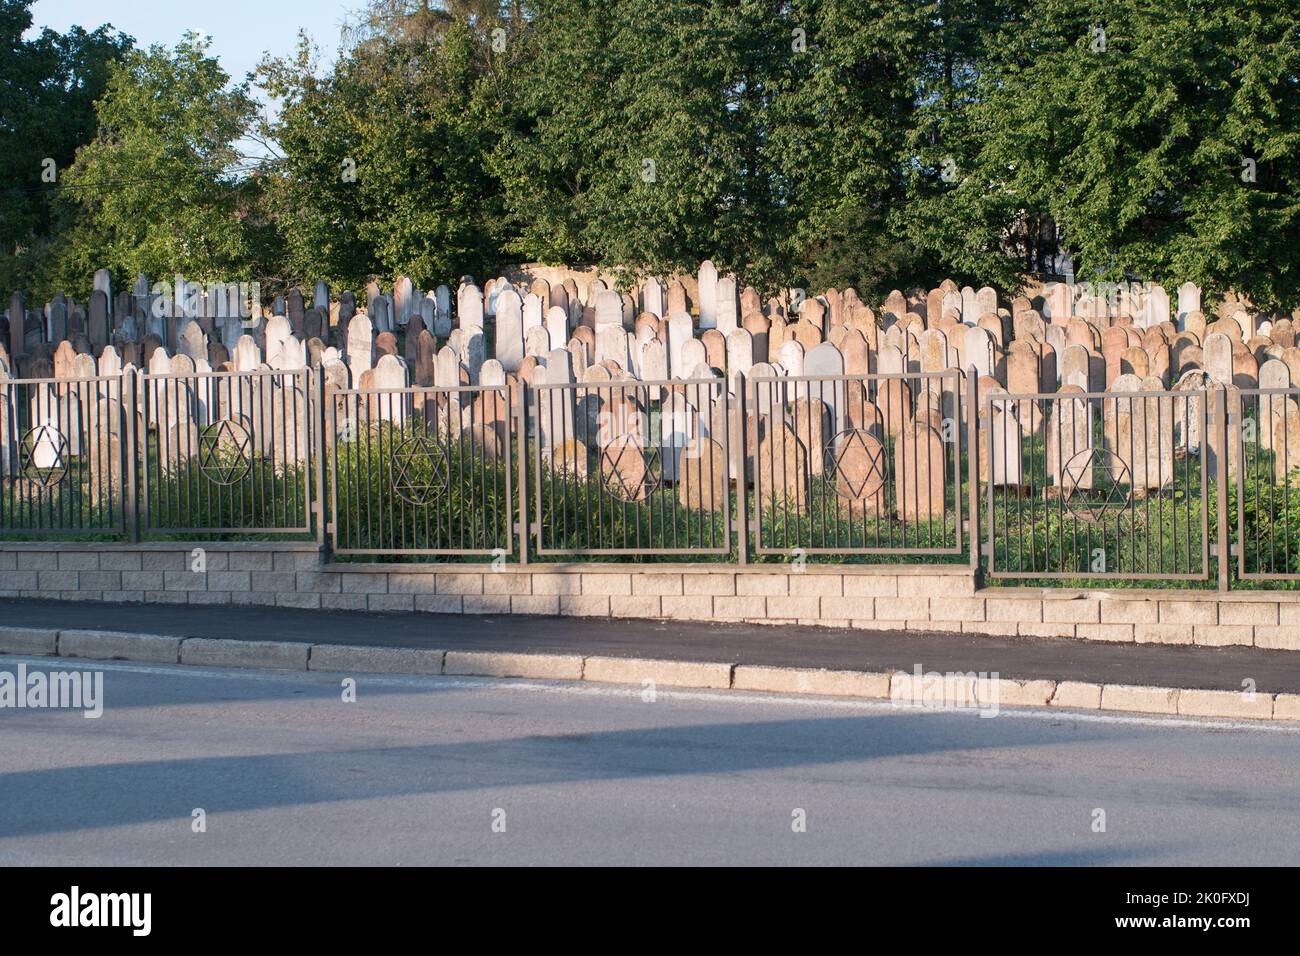 Bardejov, Eslovaquia. Histórico cementerio judío del siglo 18th al 20th. Entierro con hombres, mujeres y rabinos enterrados. Lápidas de color típico judío. Foto de stock